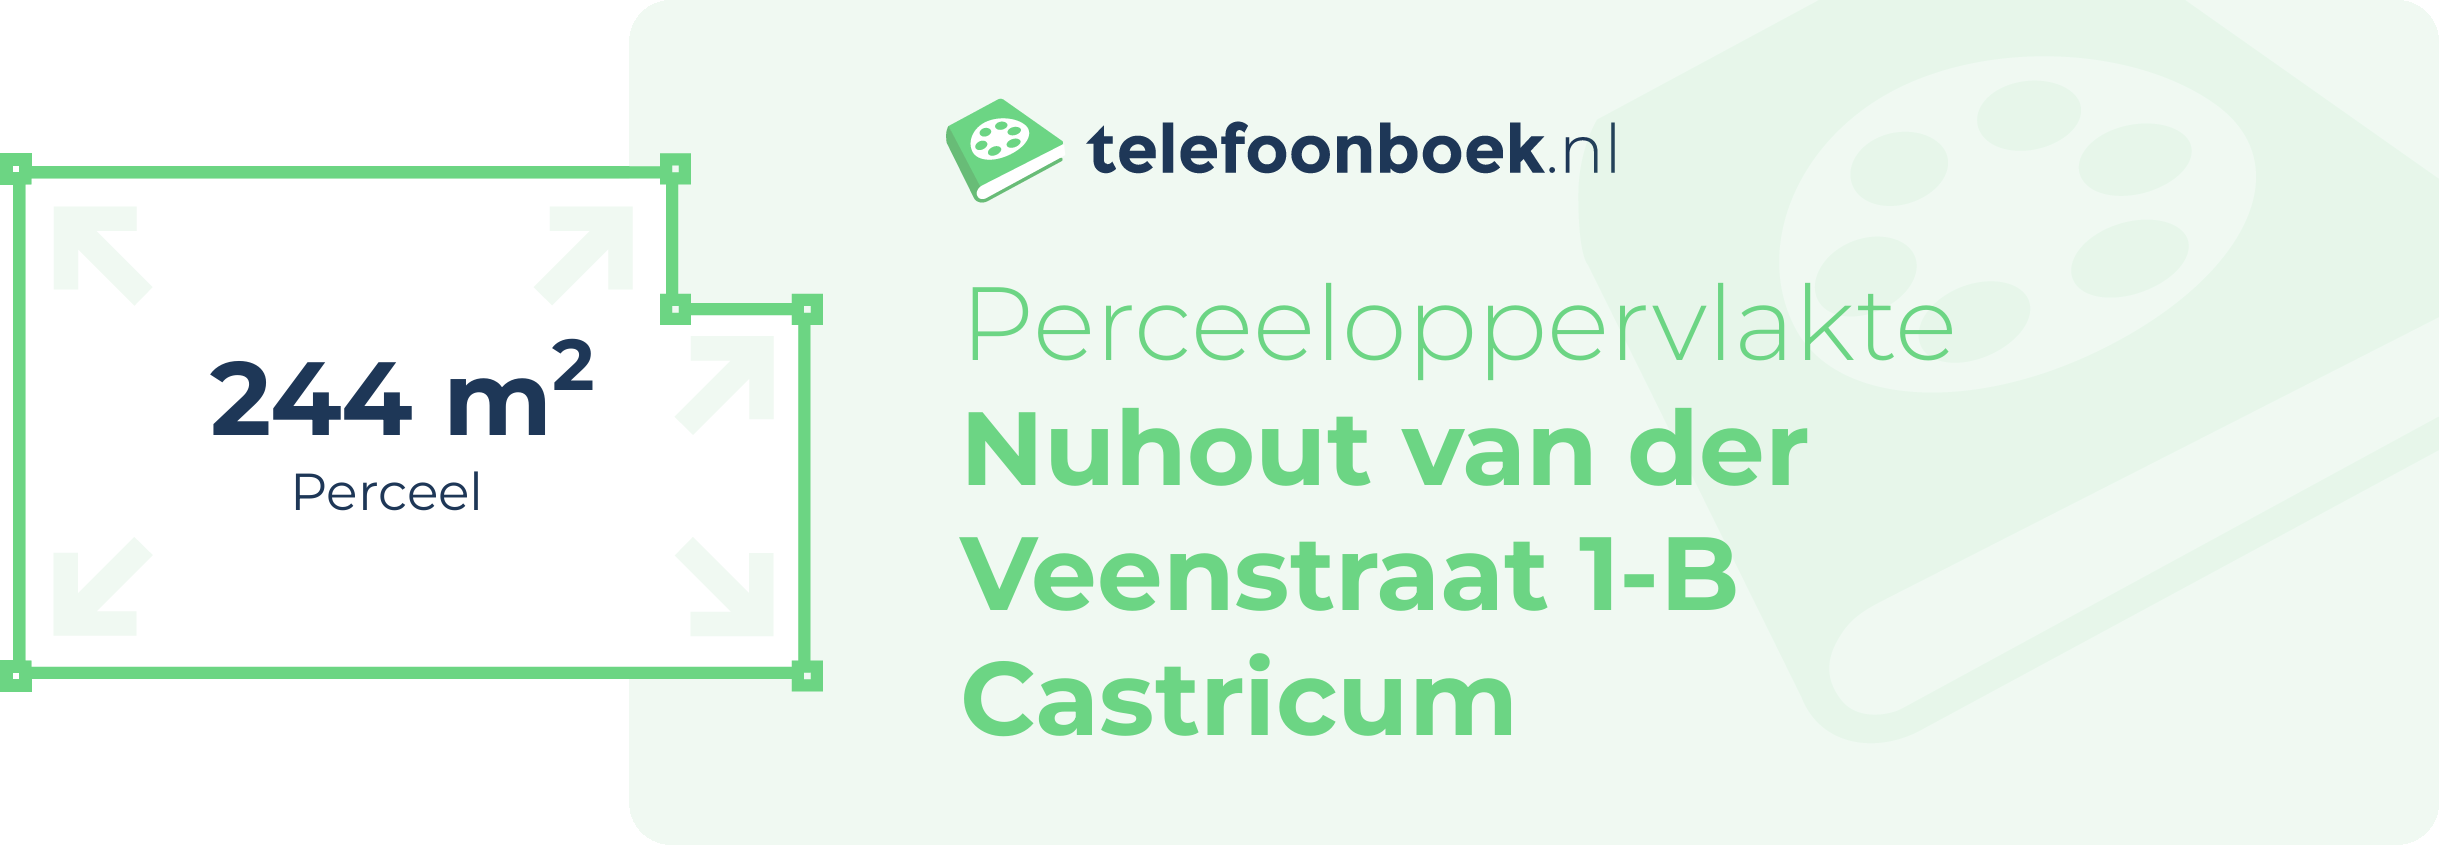 Perceeloppervlakte Nuhout Van Der Veenstraat 1-B Castricum